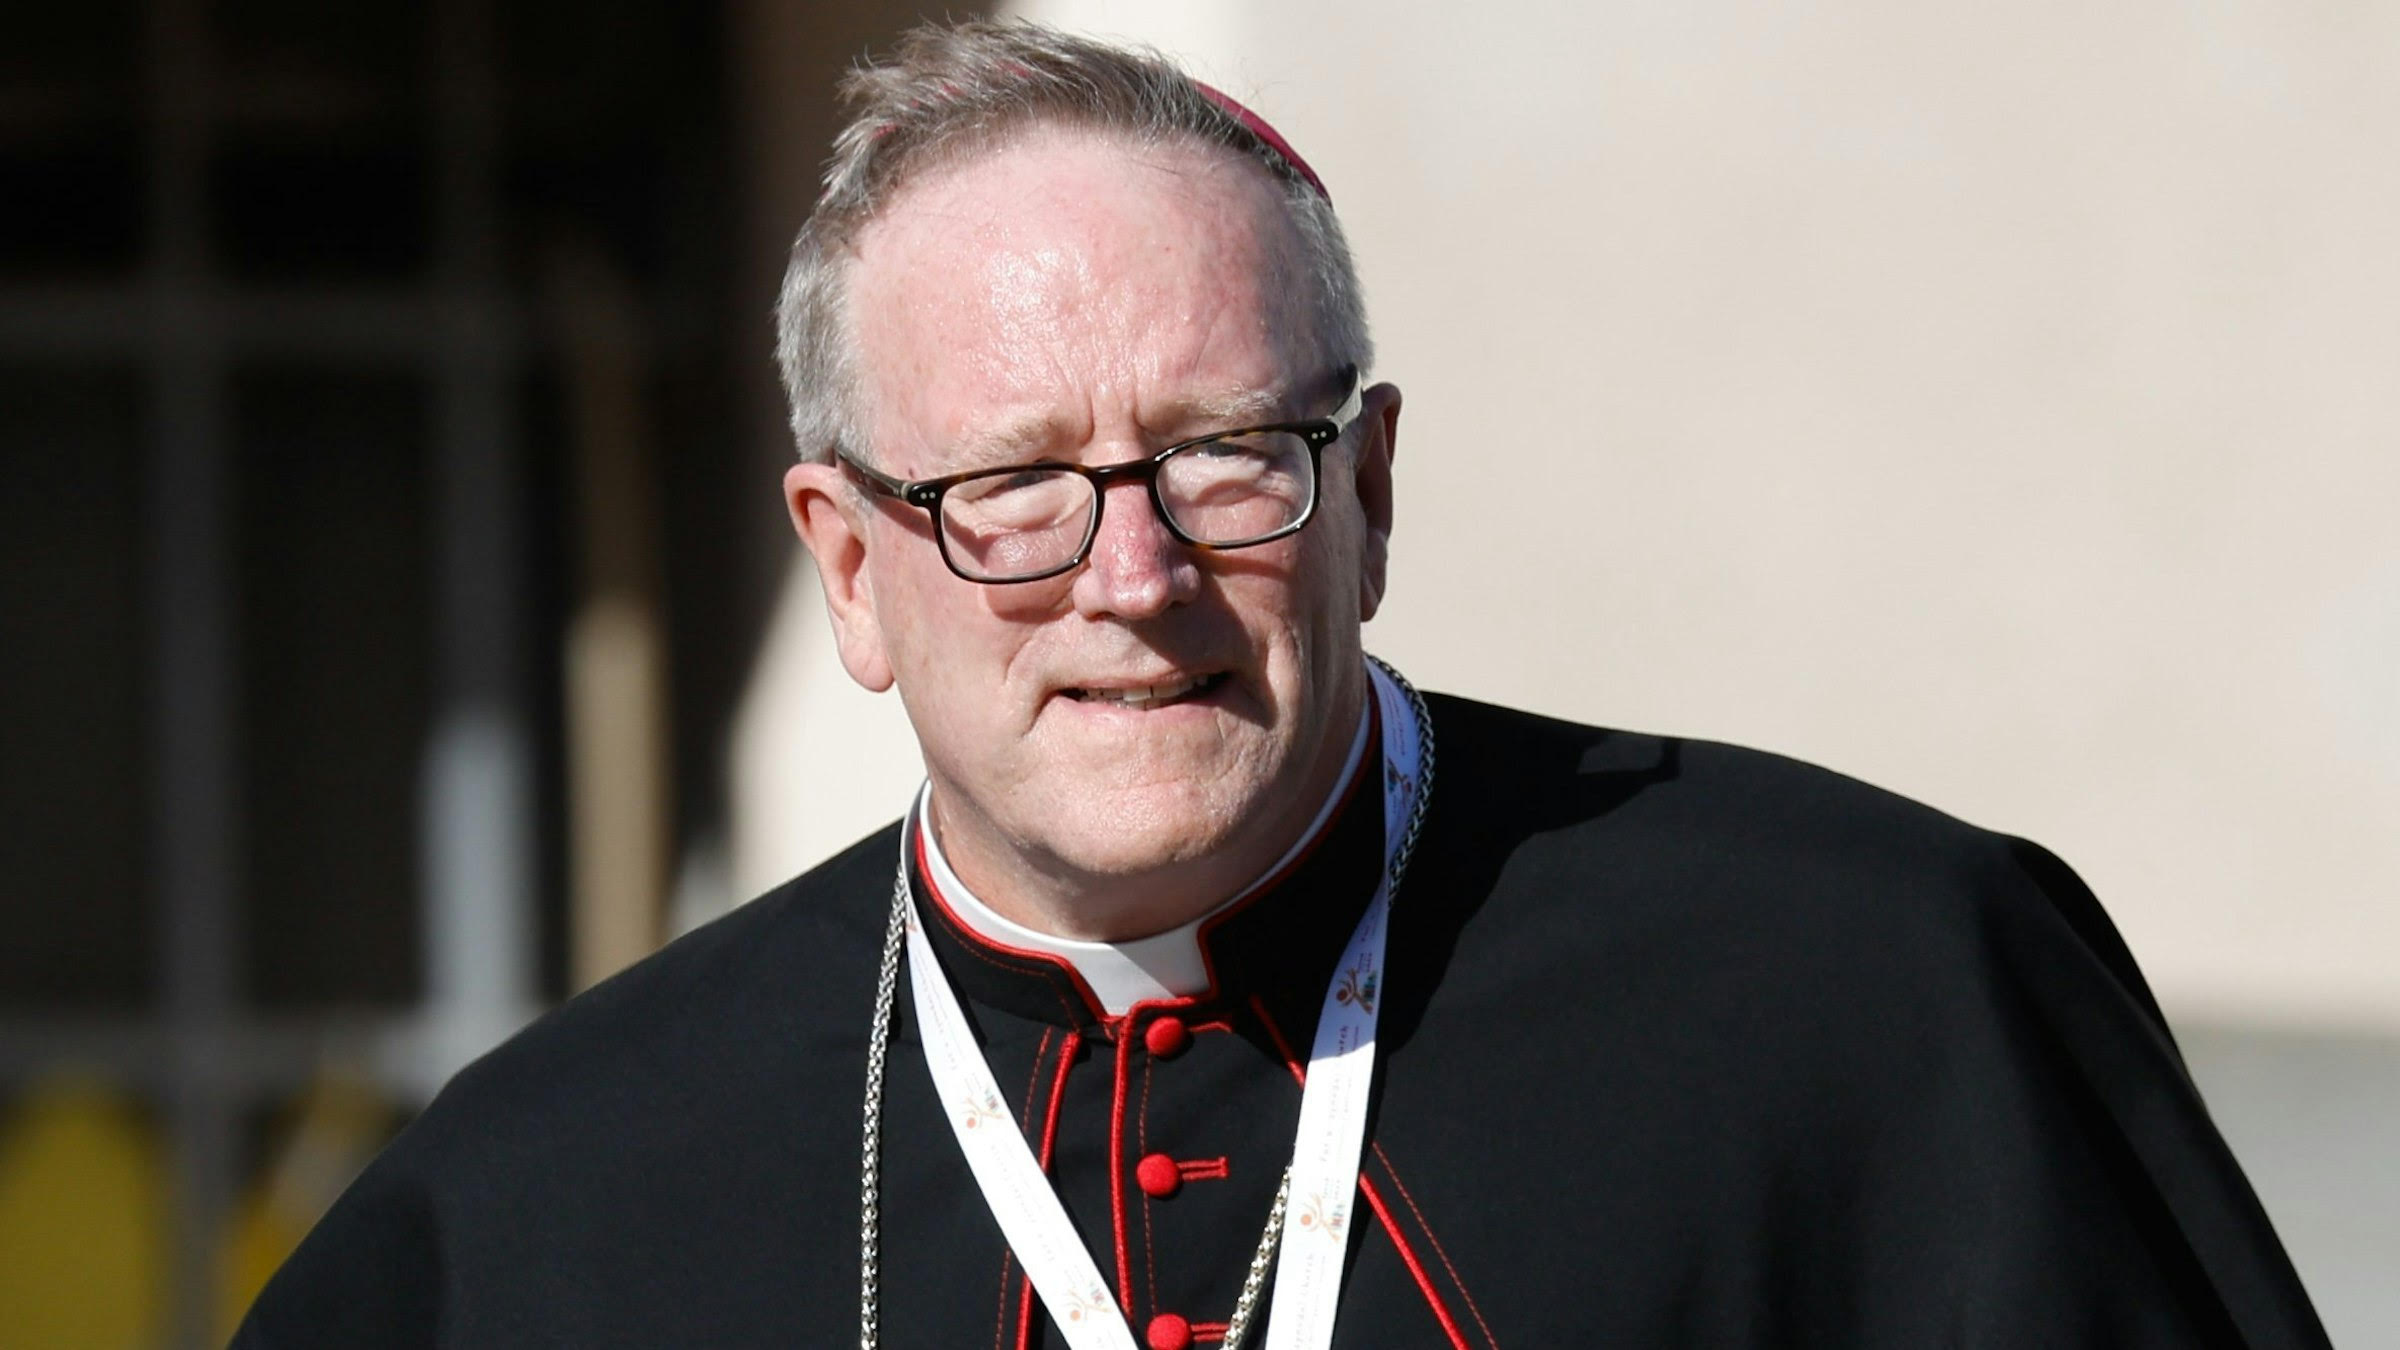 Đức Giám mục Barron chỉ trích 'sự chế nhạo thô thiển' đối với Bữa Tiệc Ly và Đức tin Kitô giáo trong lễ khai mạc Thế vận hội